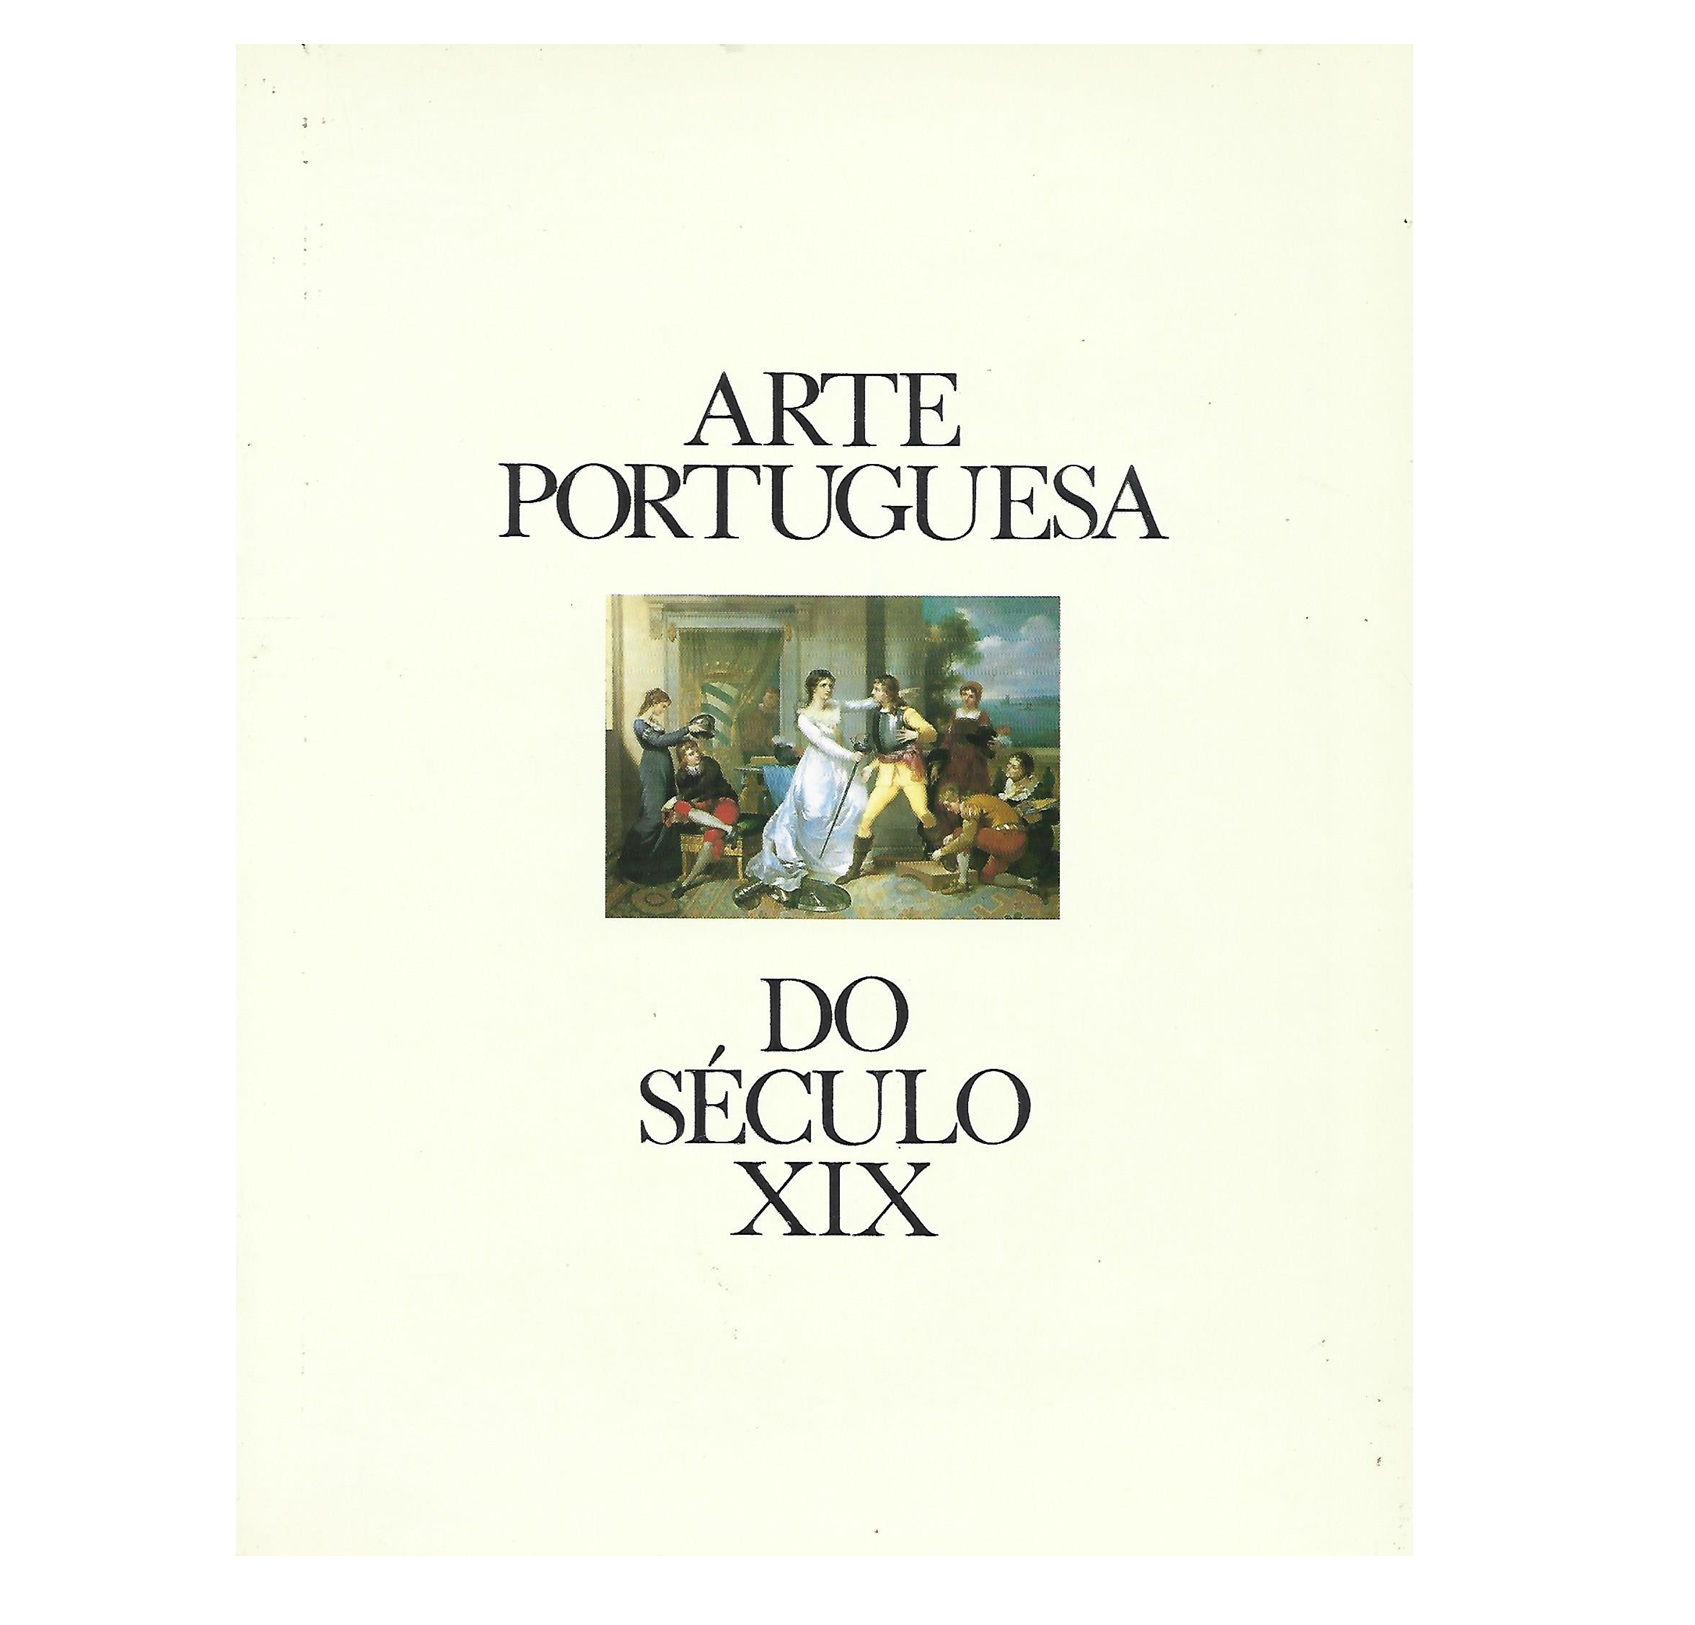 ARTE PORTUGUESA DO SÉCULO XIX